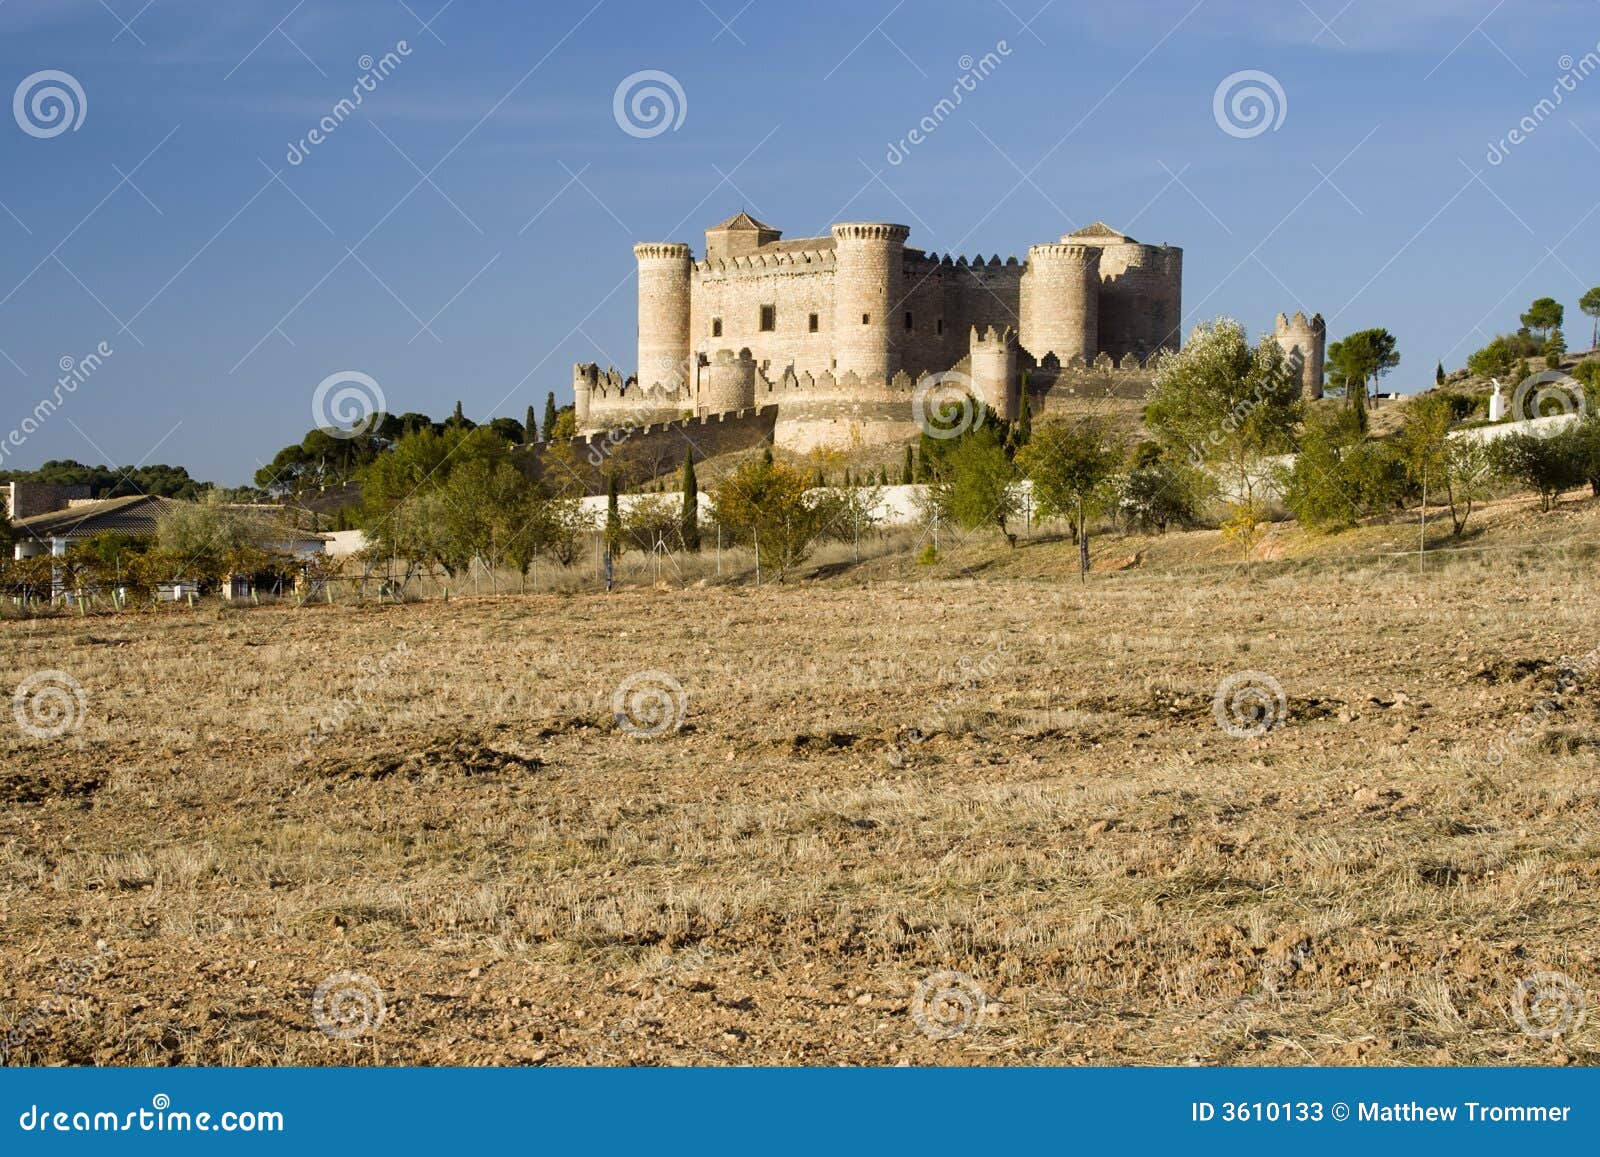 castle in la mancha